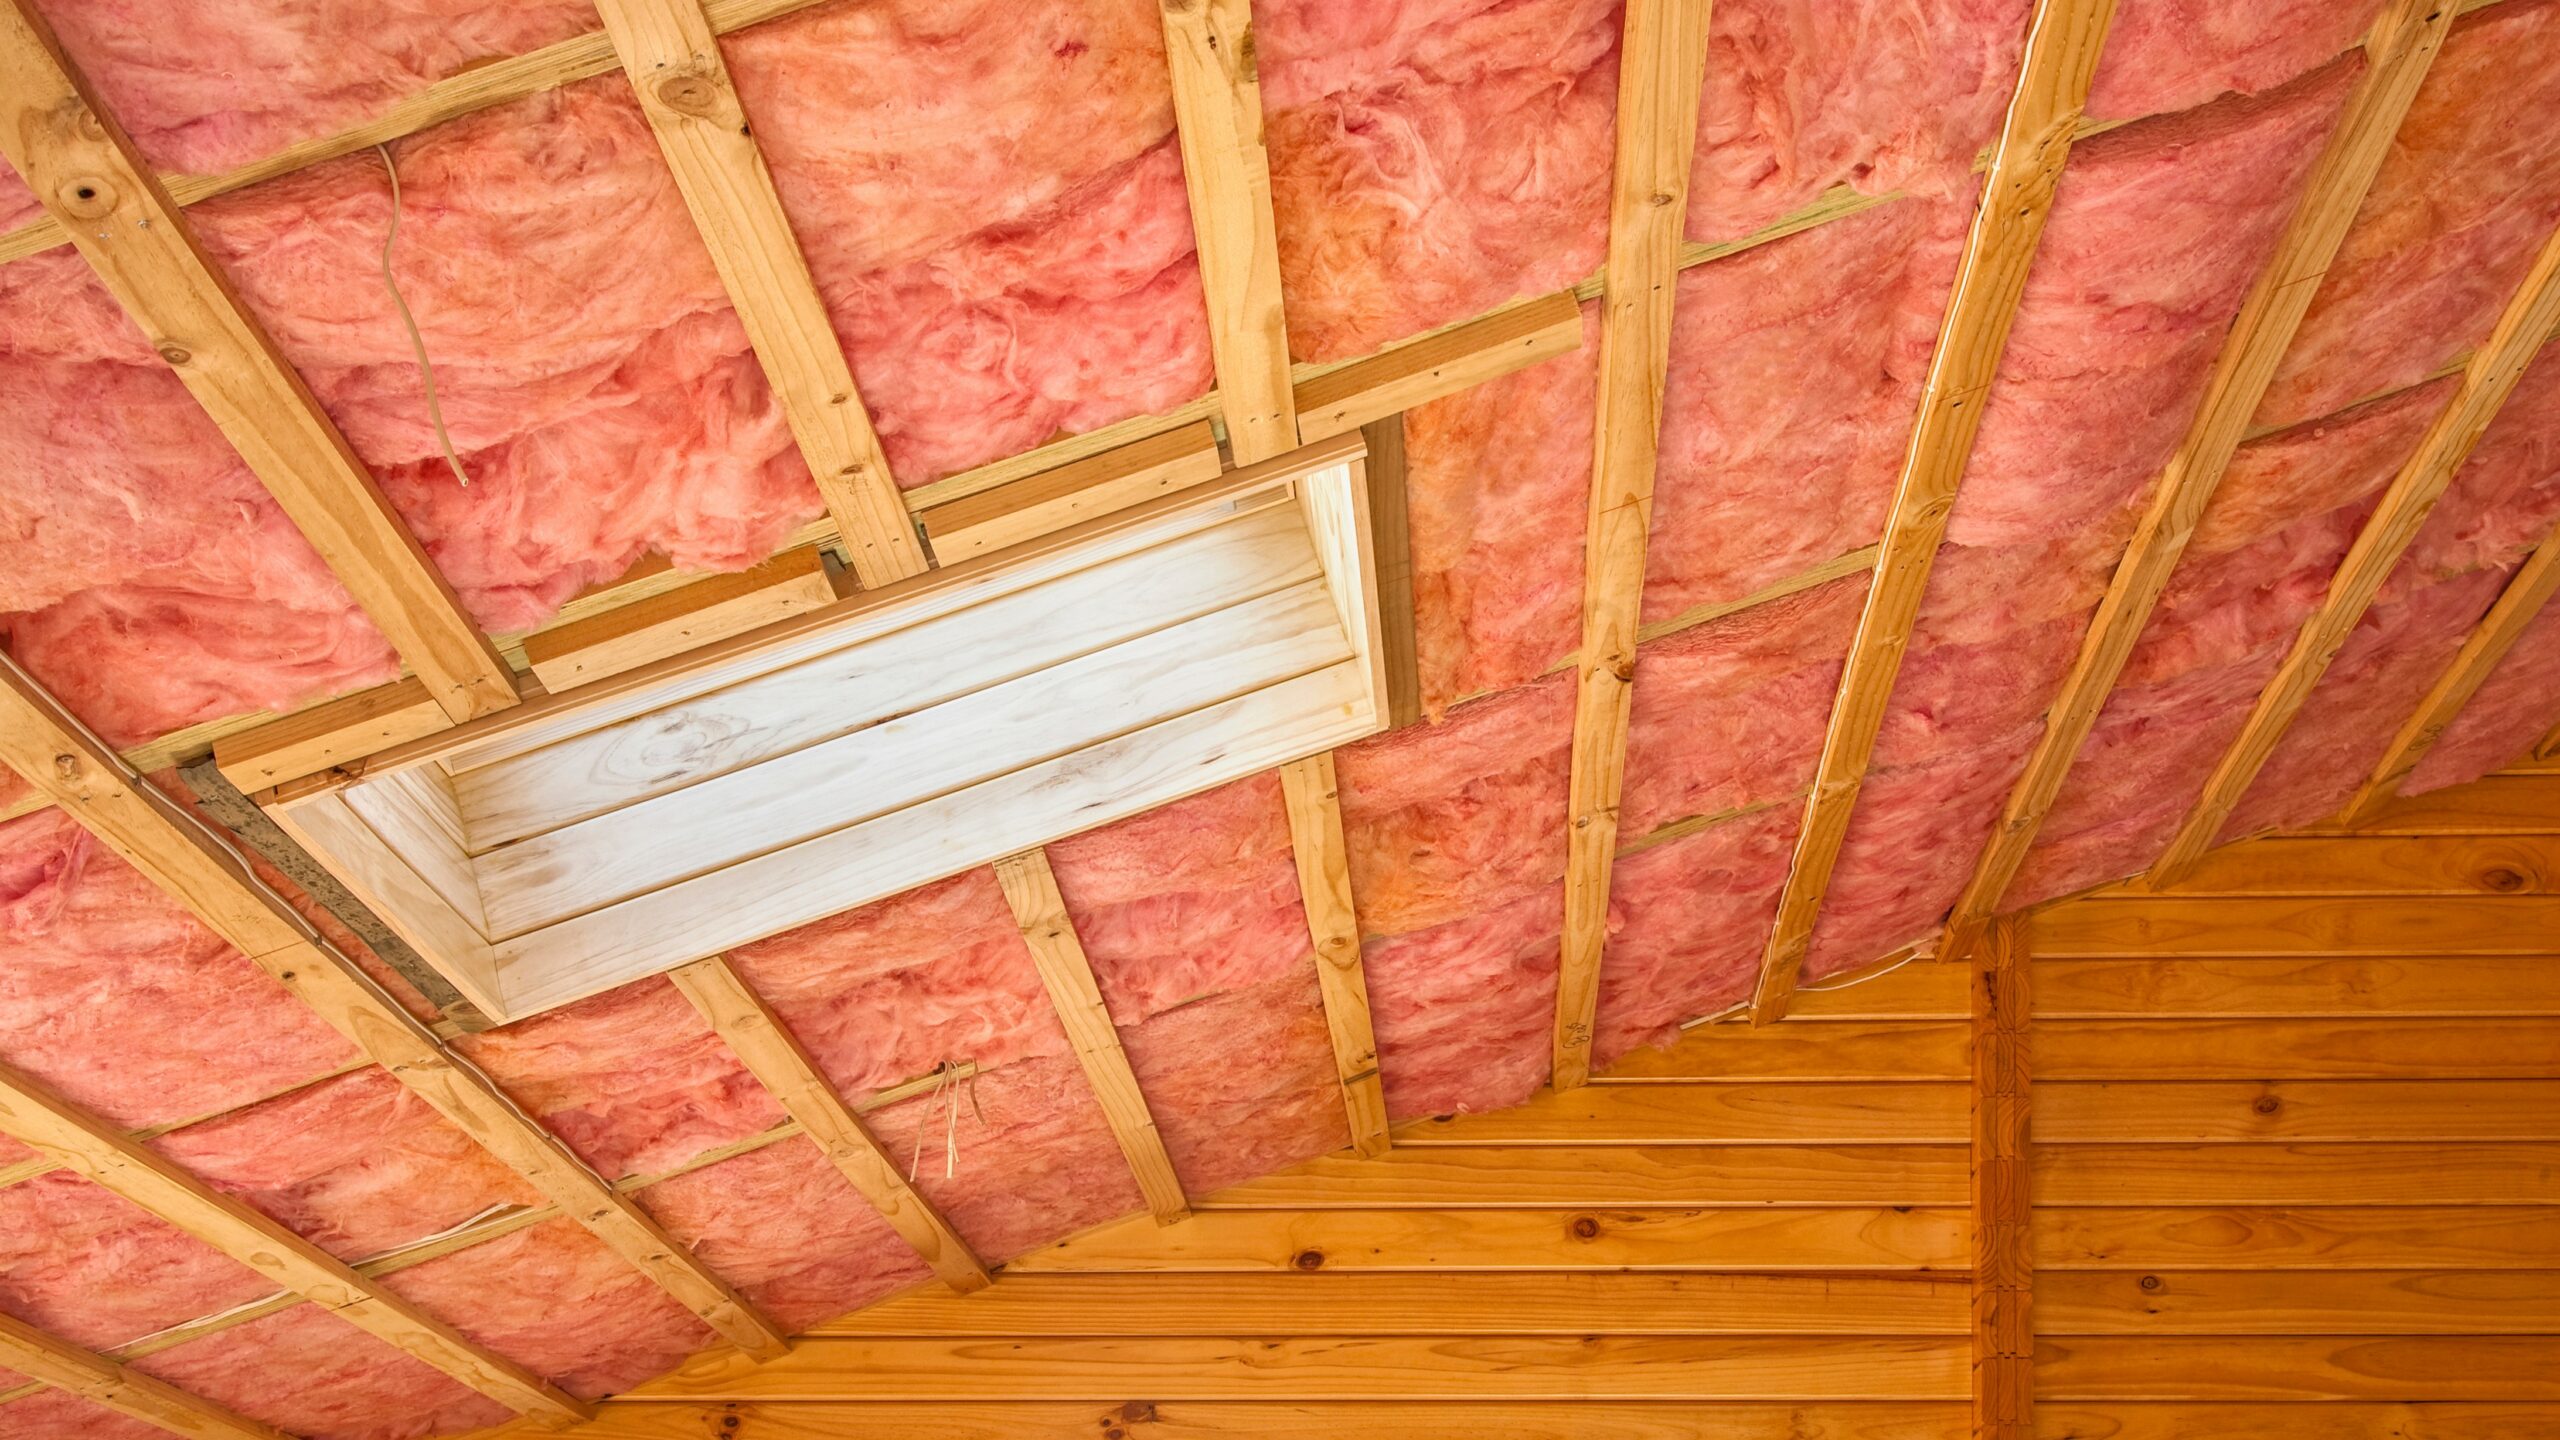 Fiberglass insulation in roof trusses.